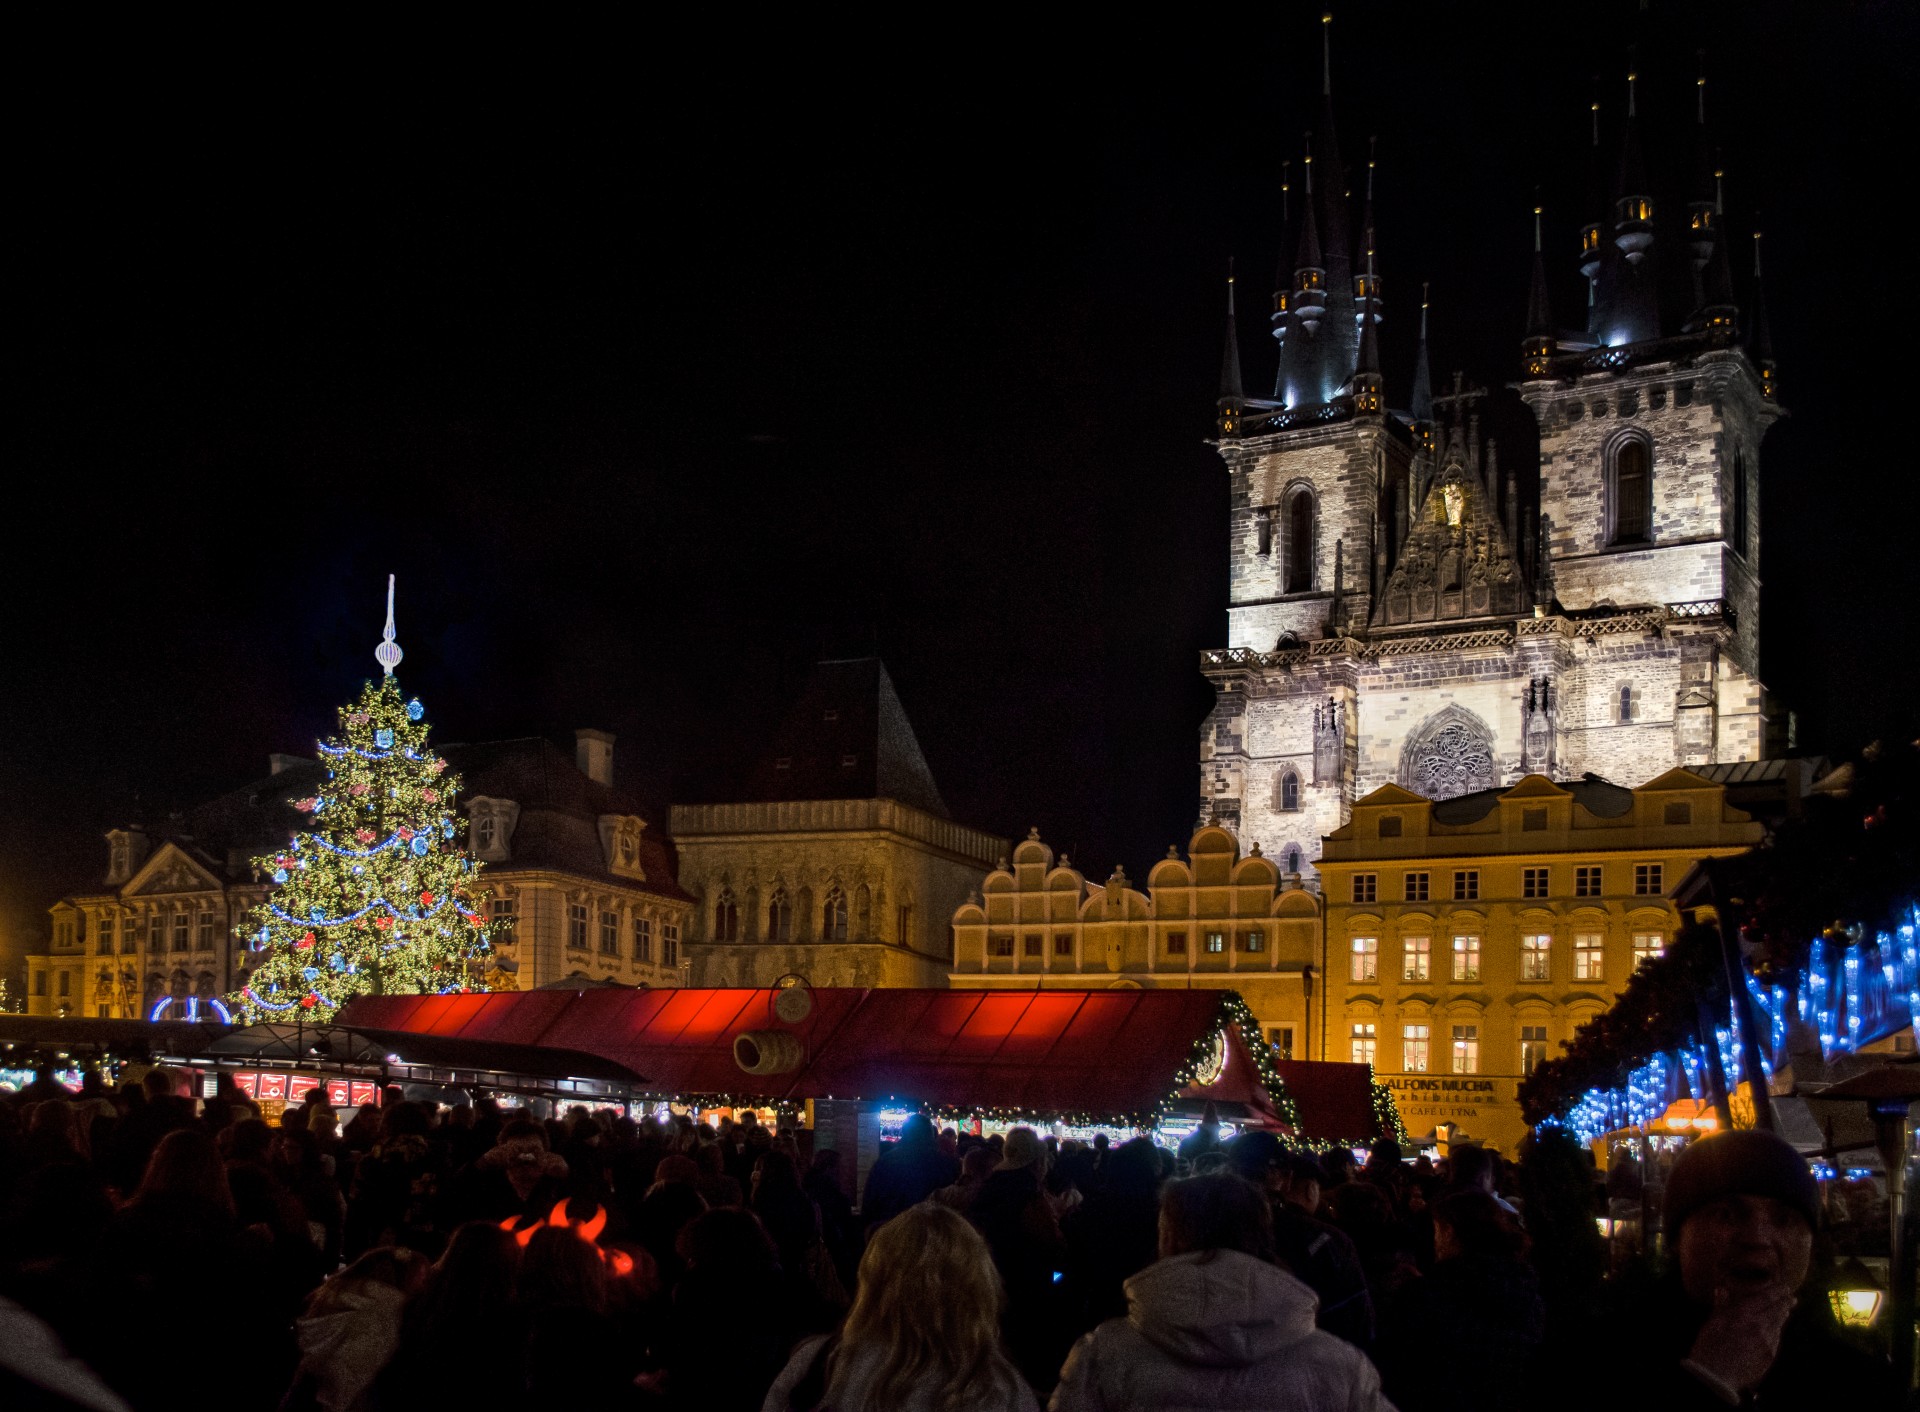 Prague - Christmas Tree At Night